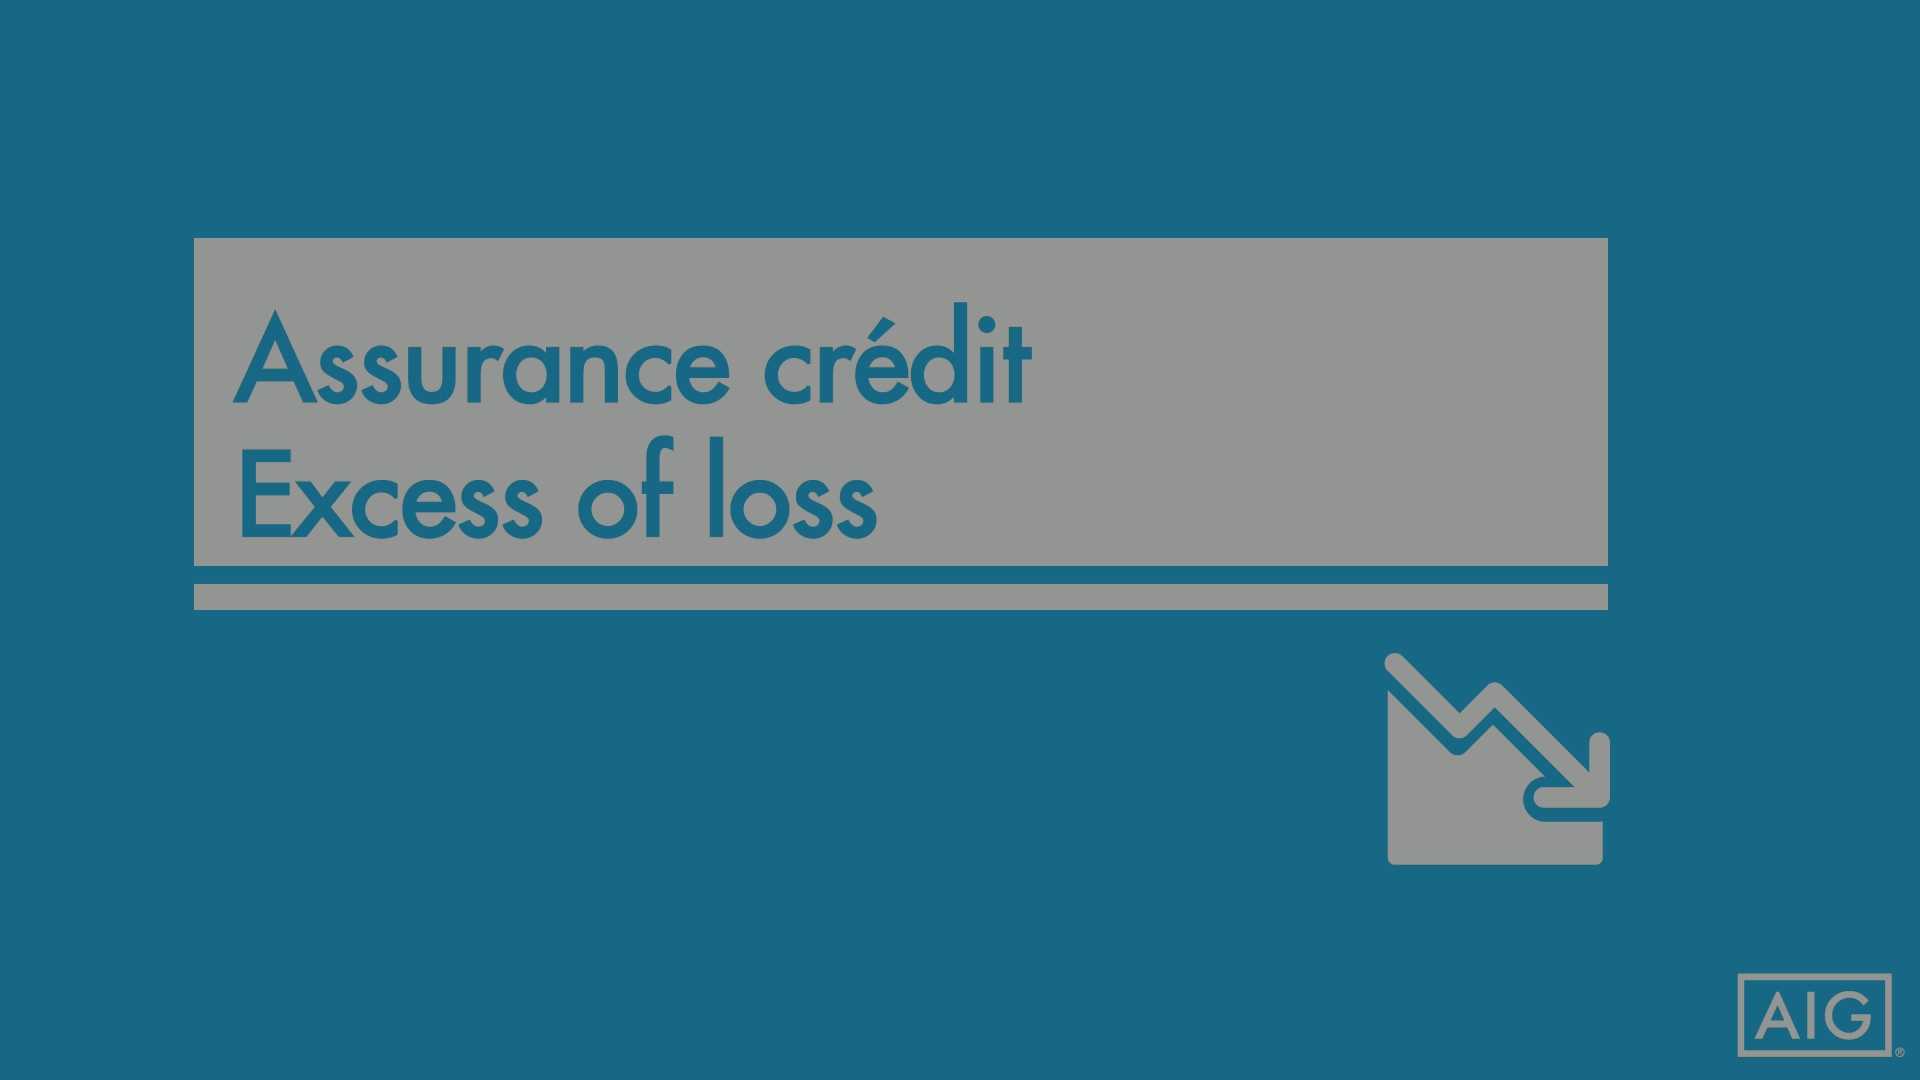 L'Assurance Crédit - Excess of loss par AIG